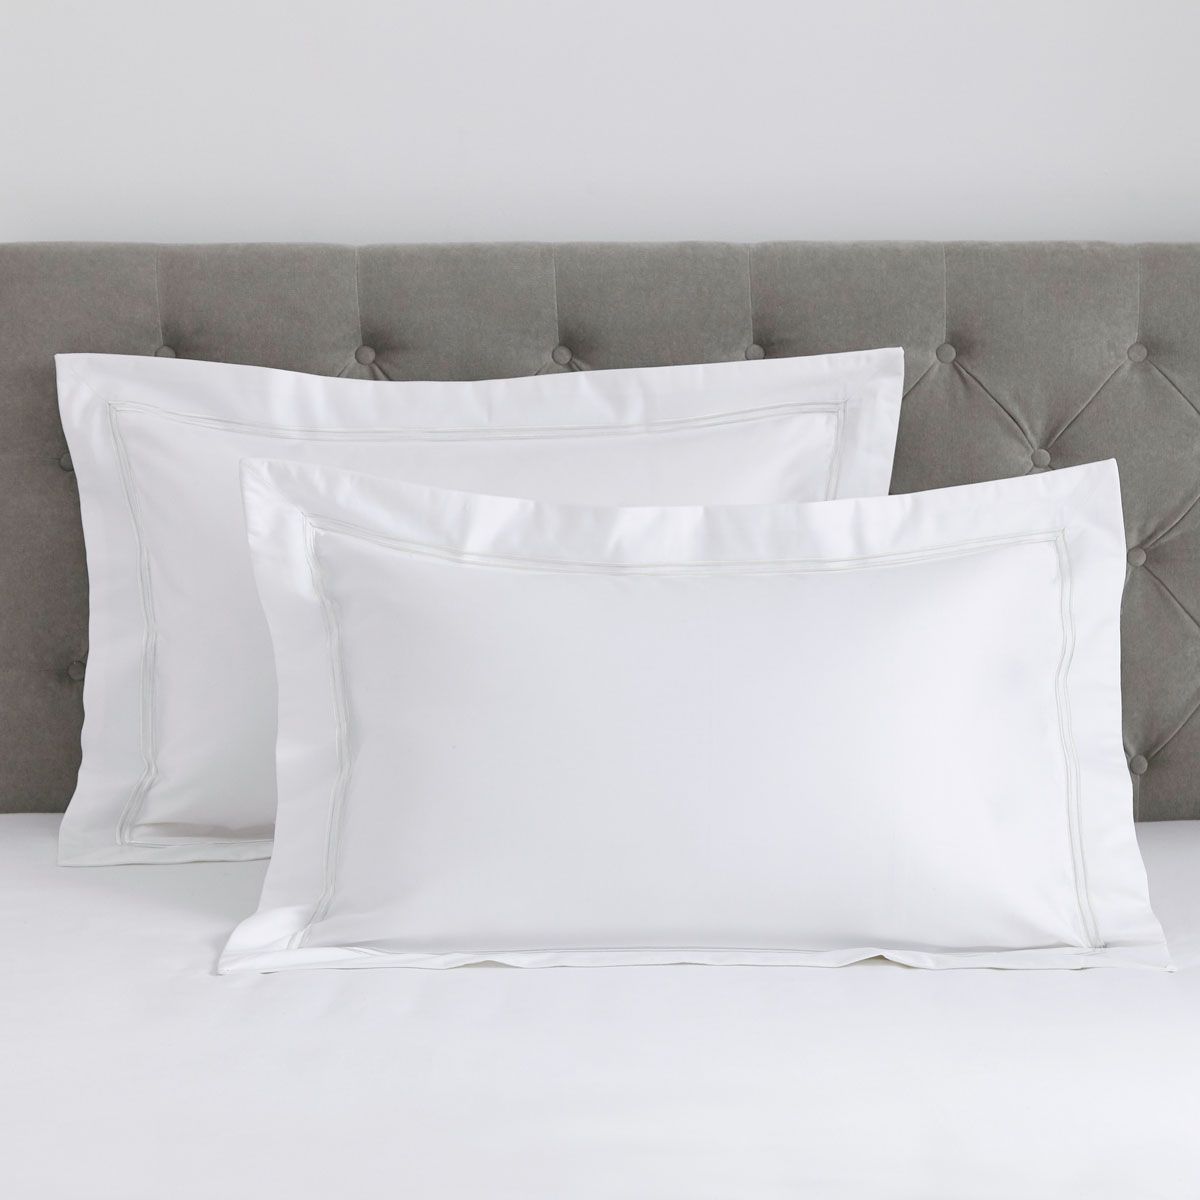 Pair of Kensington Oxford Pillowcases 800 Thread Count Egyptain Cotton - White